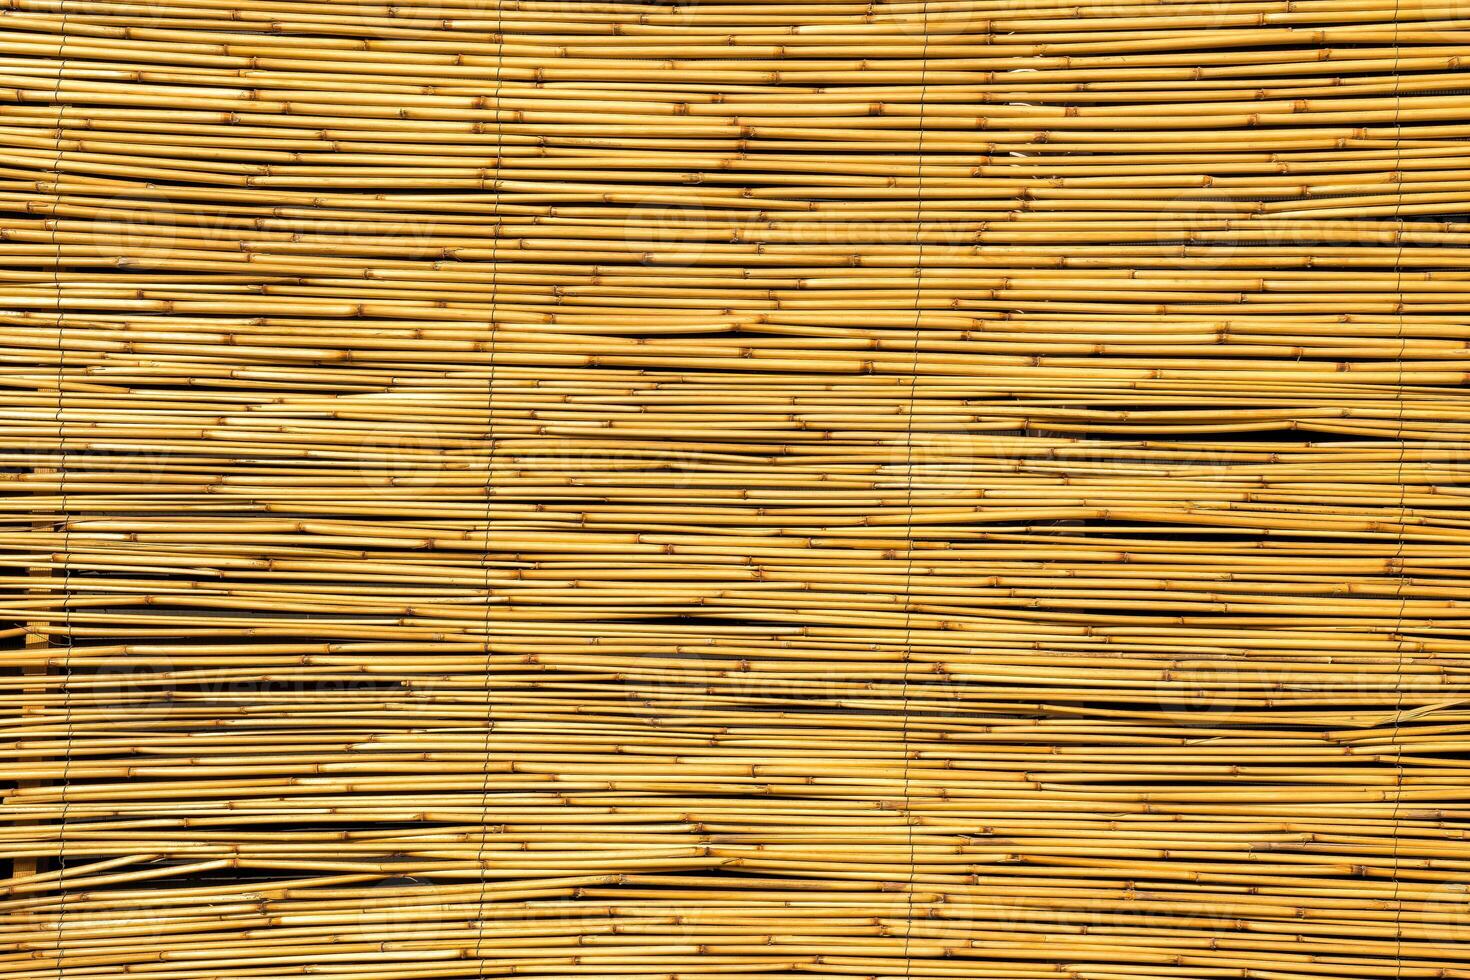 textura do oriental bambu cortinas. abstrato fundo. foto